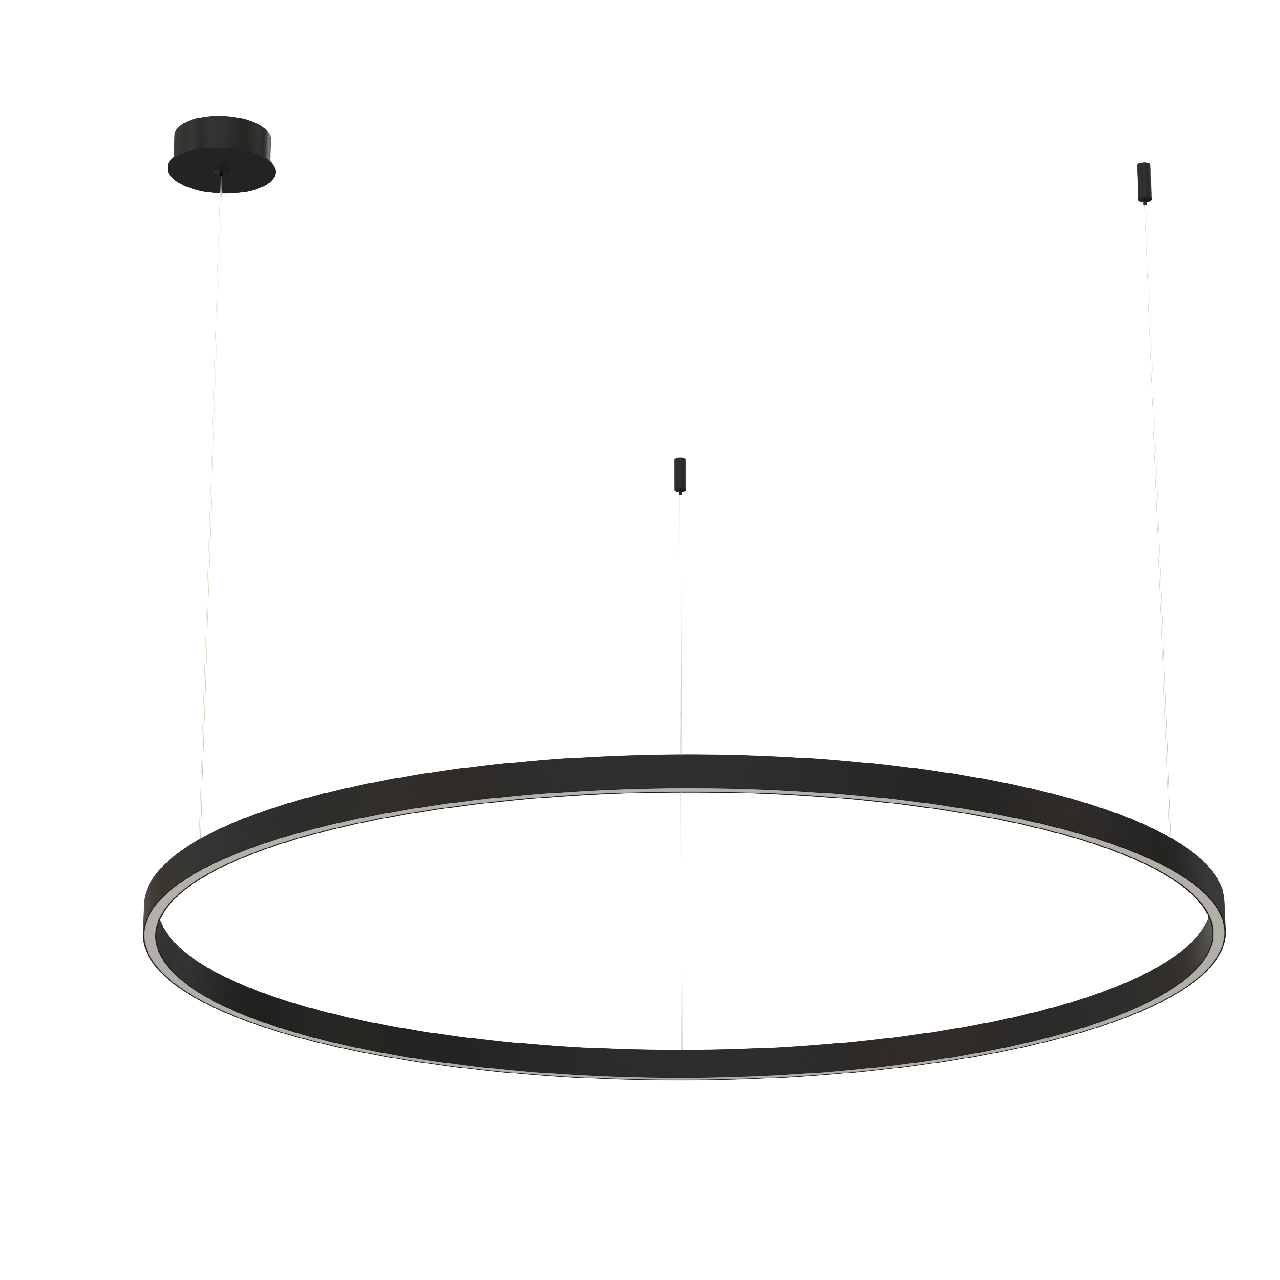 Подвесной светильник Byled серия Halo 1535 (75W, 220V, CRI>90, 1200mm, Черный корпус, Цвет: Теплый белый), фото 1